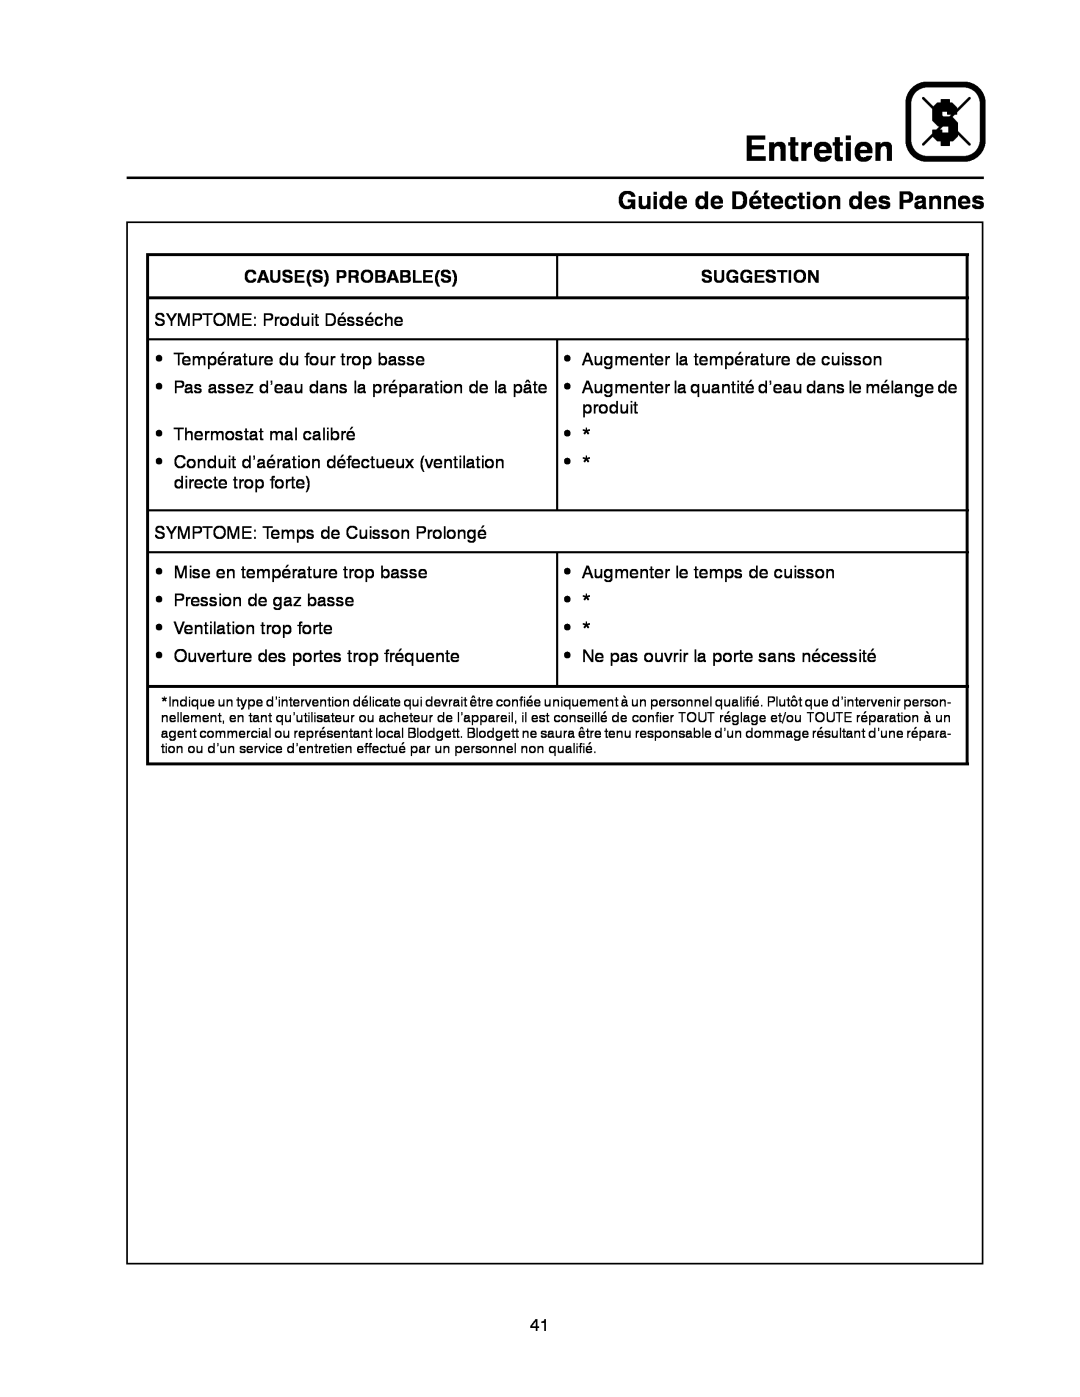 Blodgett 900 SERIES manual Guide de Détection des Pannes, Entretien 